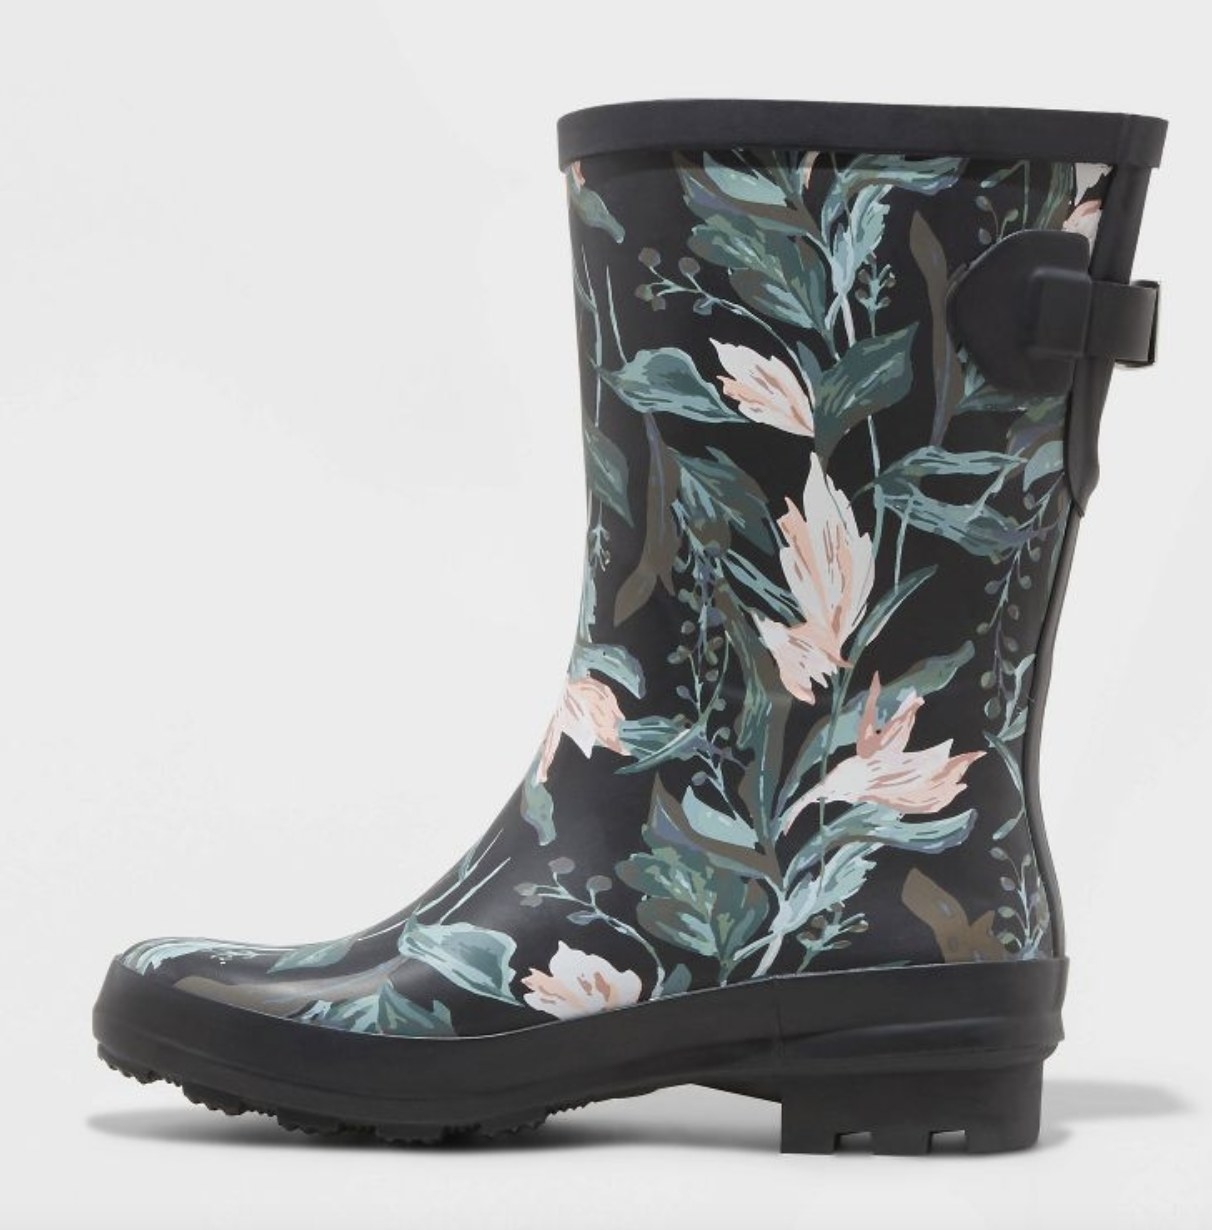 A floral rain boot